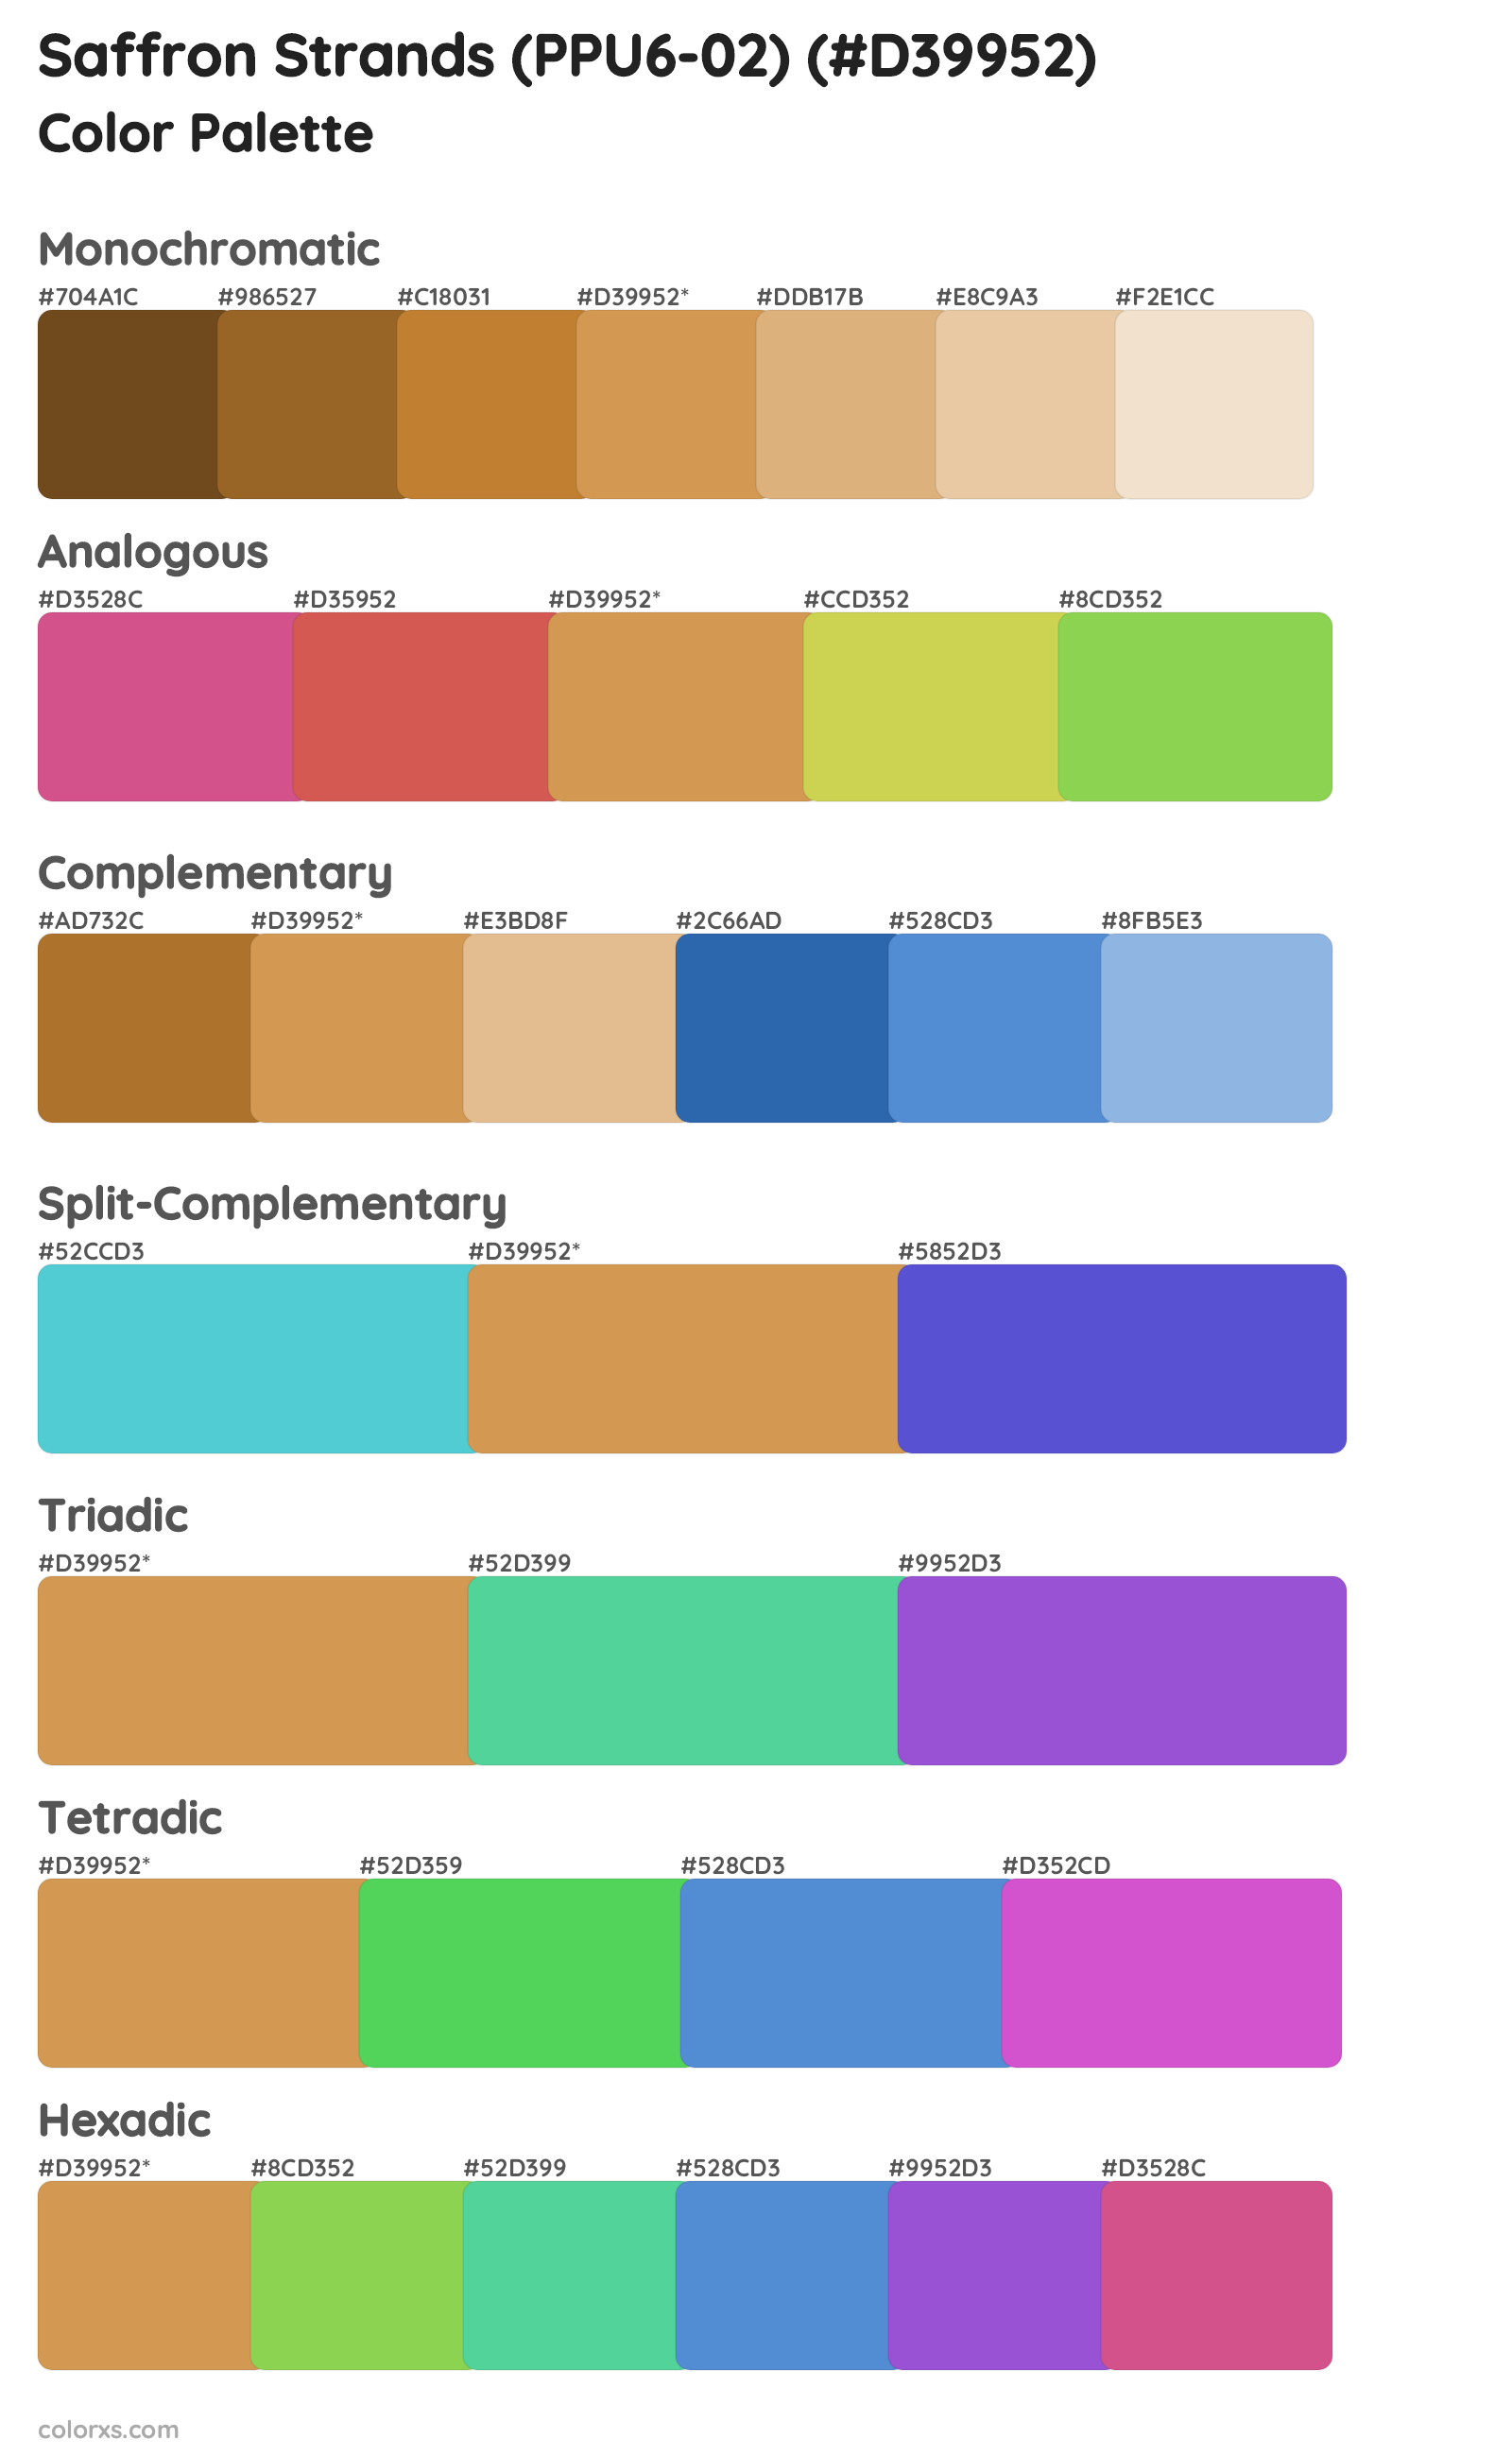 Saffron Strands (PPU6-02) Color Scheme Palettes